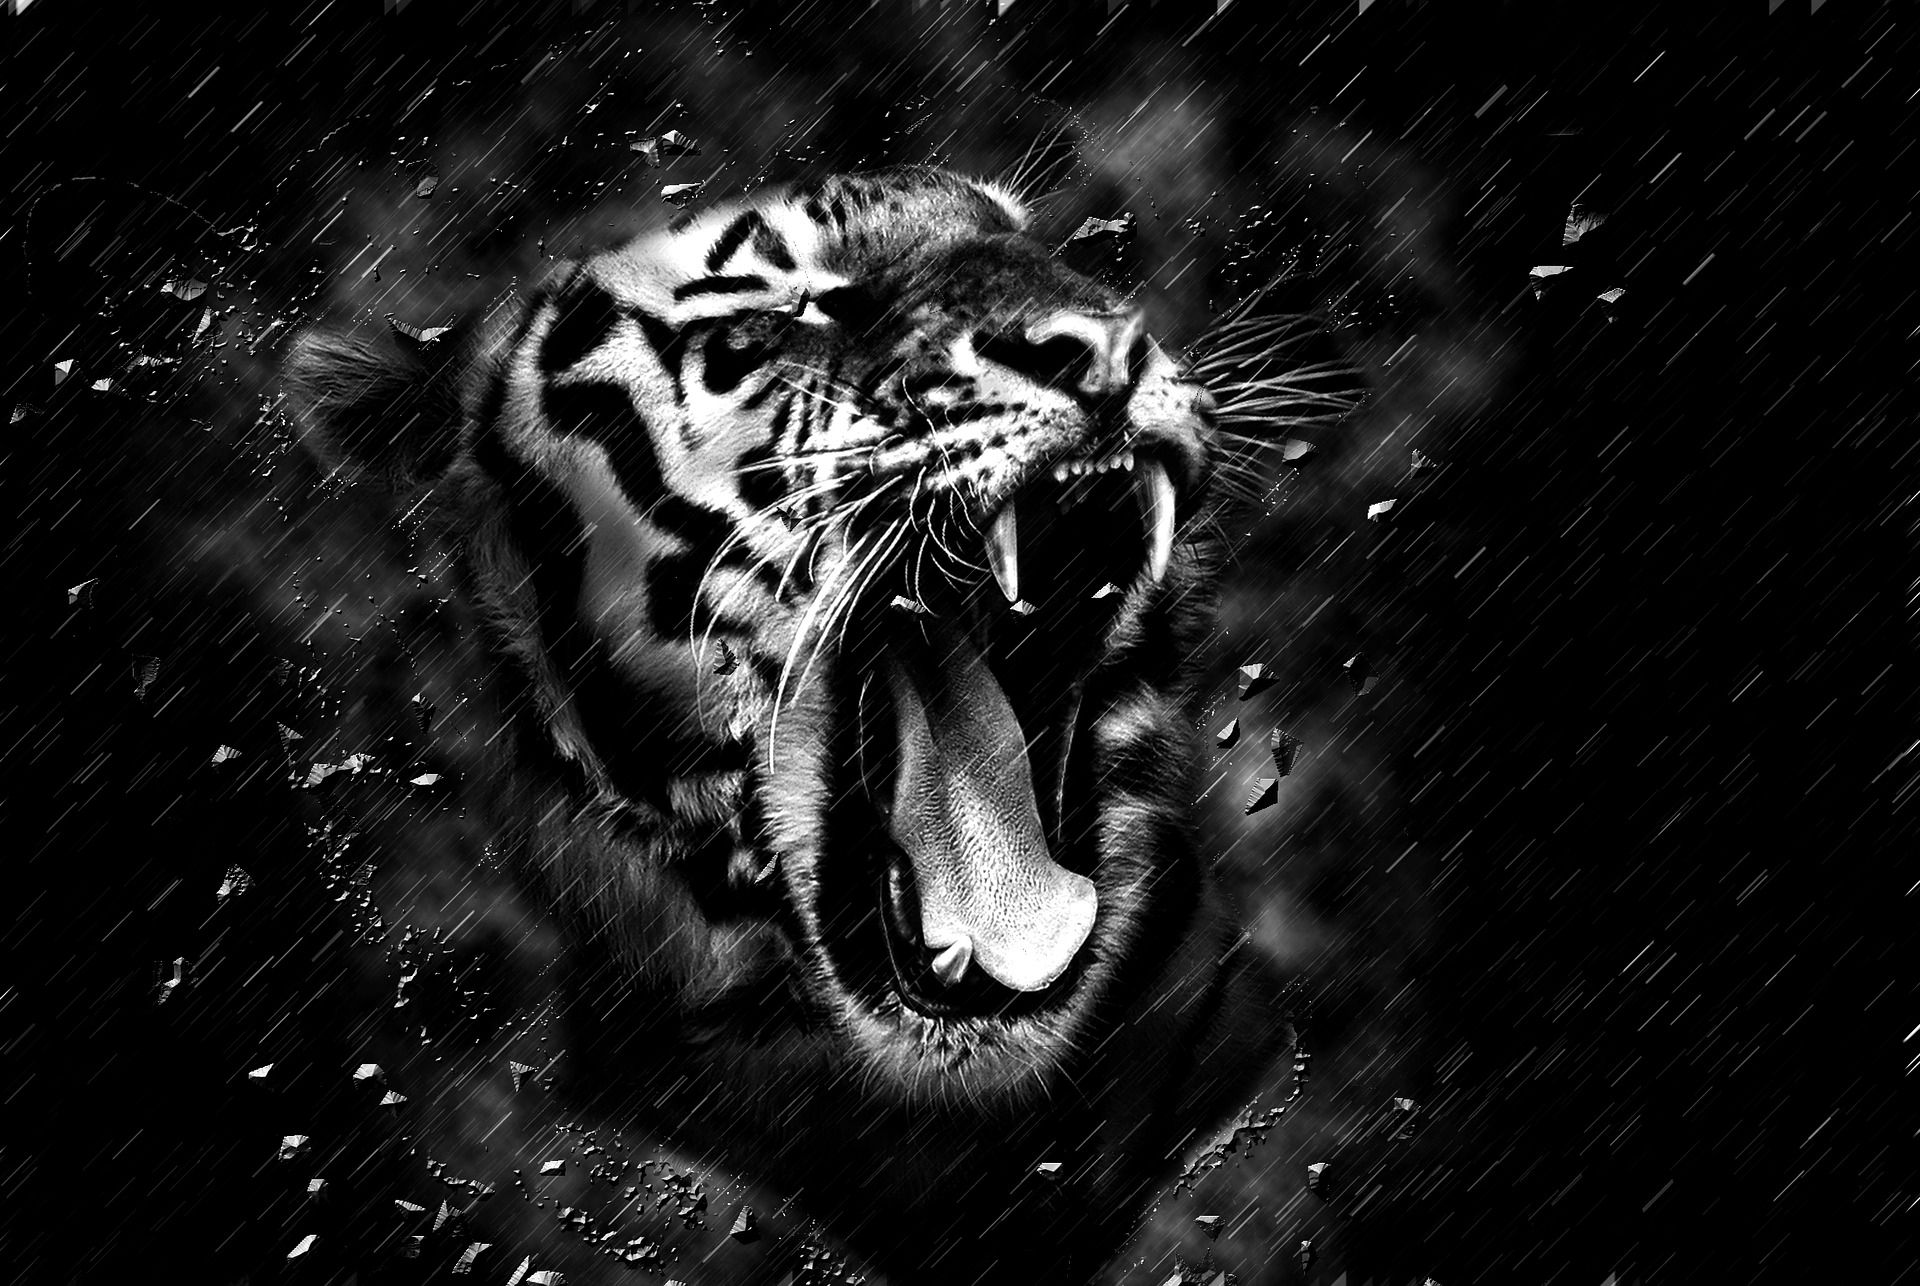 Dark tiger by PunkerLazar on DeviantArt